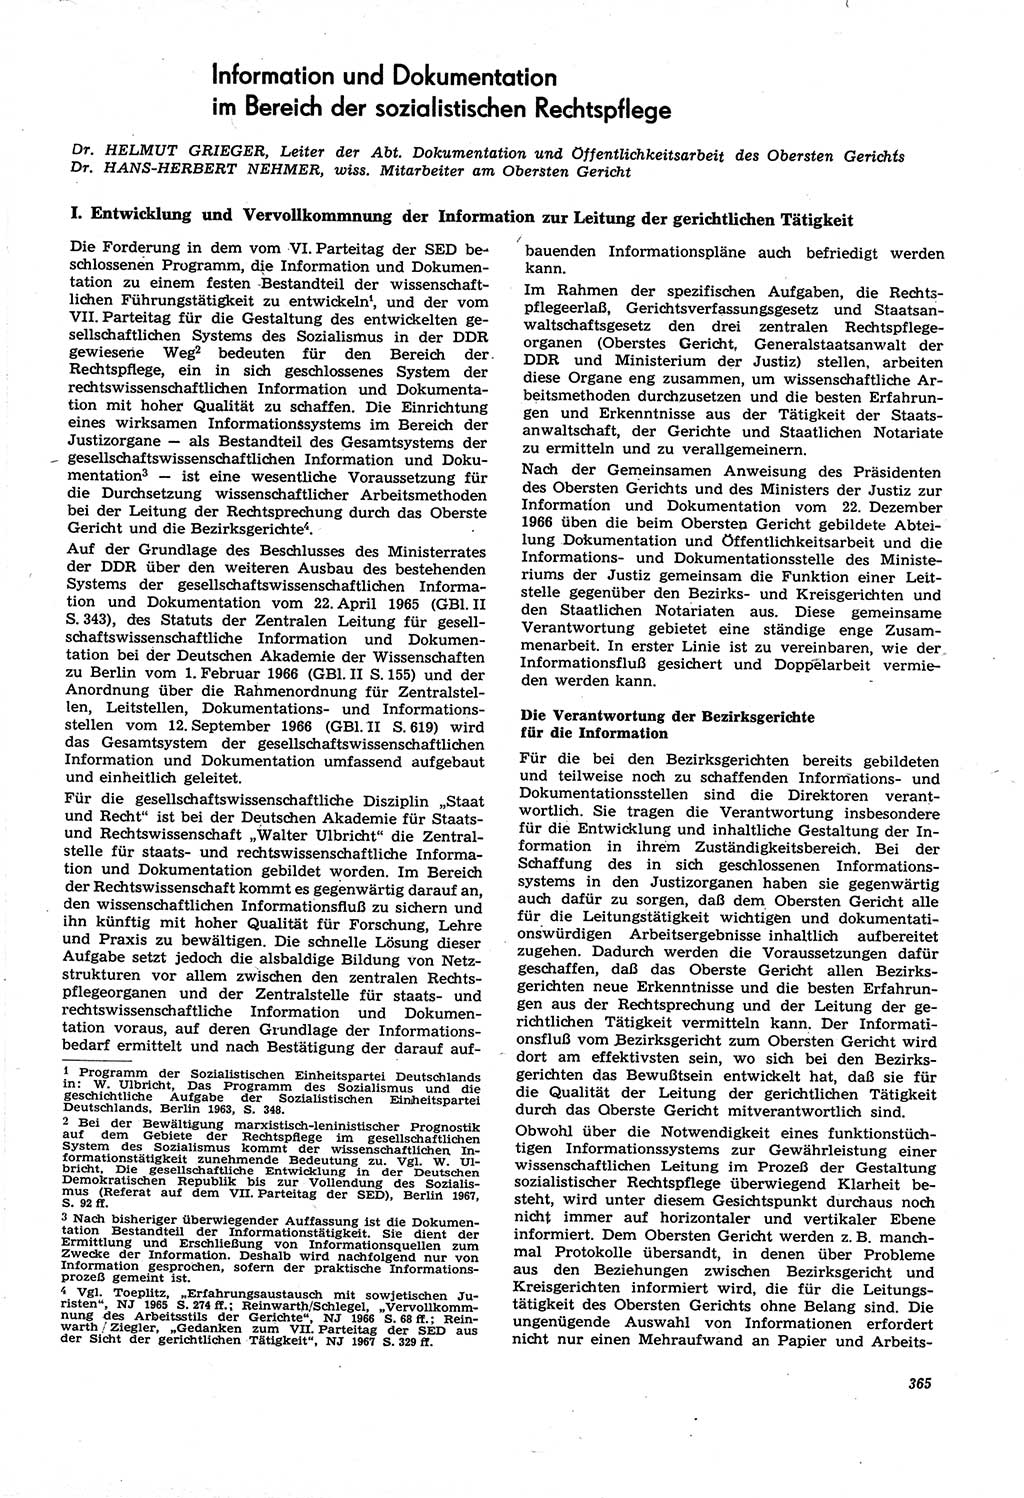 Neue Justiz (NJ), Zeitschrift für Recht und Rechtswissenschaft [Deutsche Demokratische Republik (DDR)], 21. Jahrgang 1967, Seite 365 (NJ DDR 1967, S. 365)